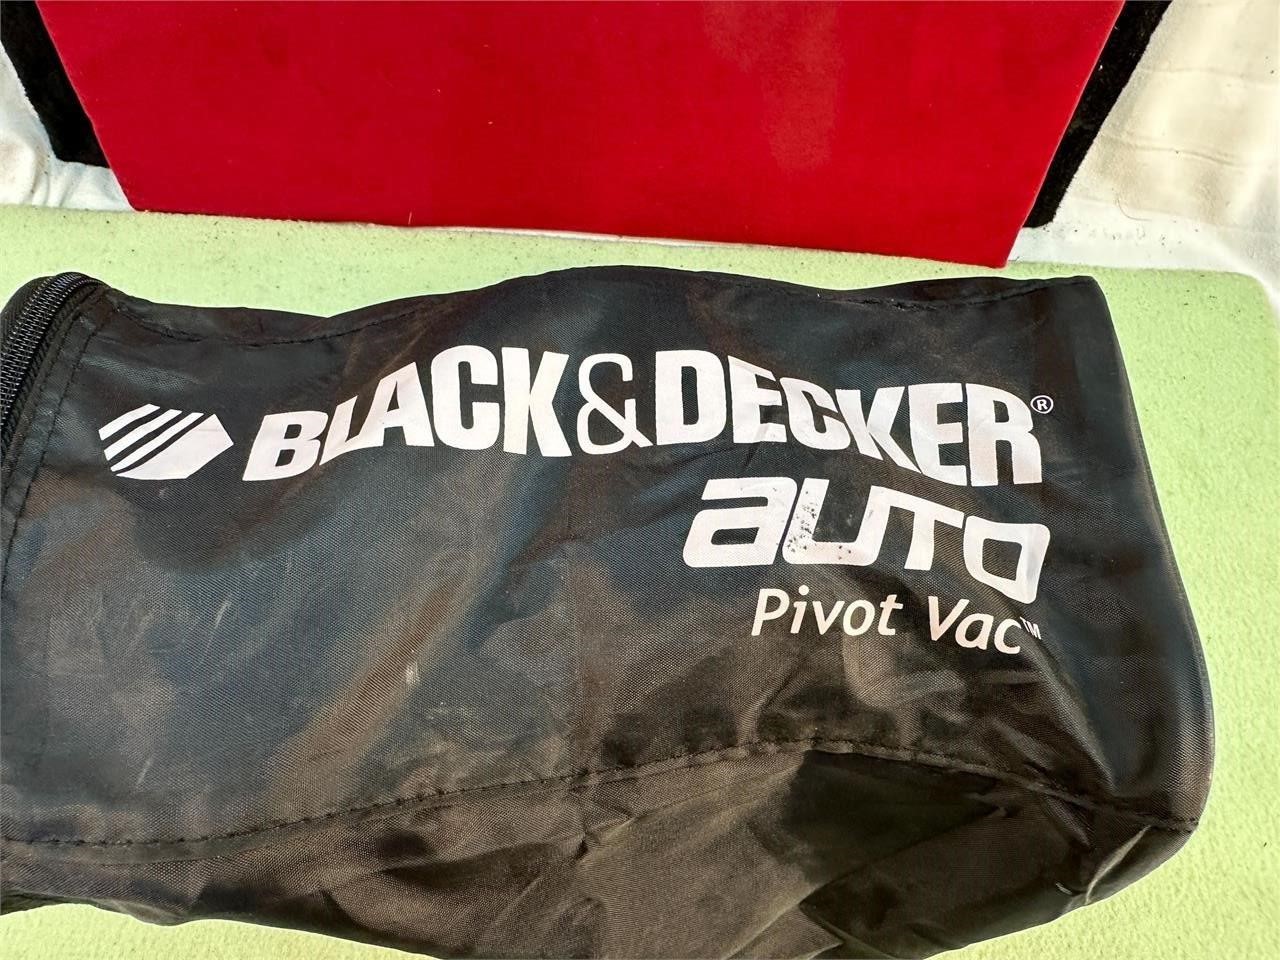 BLACK & DECKER AUTO PILOT VACUUM